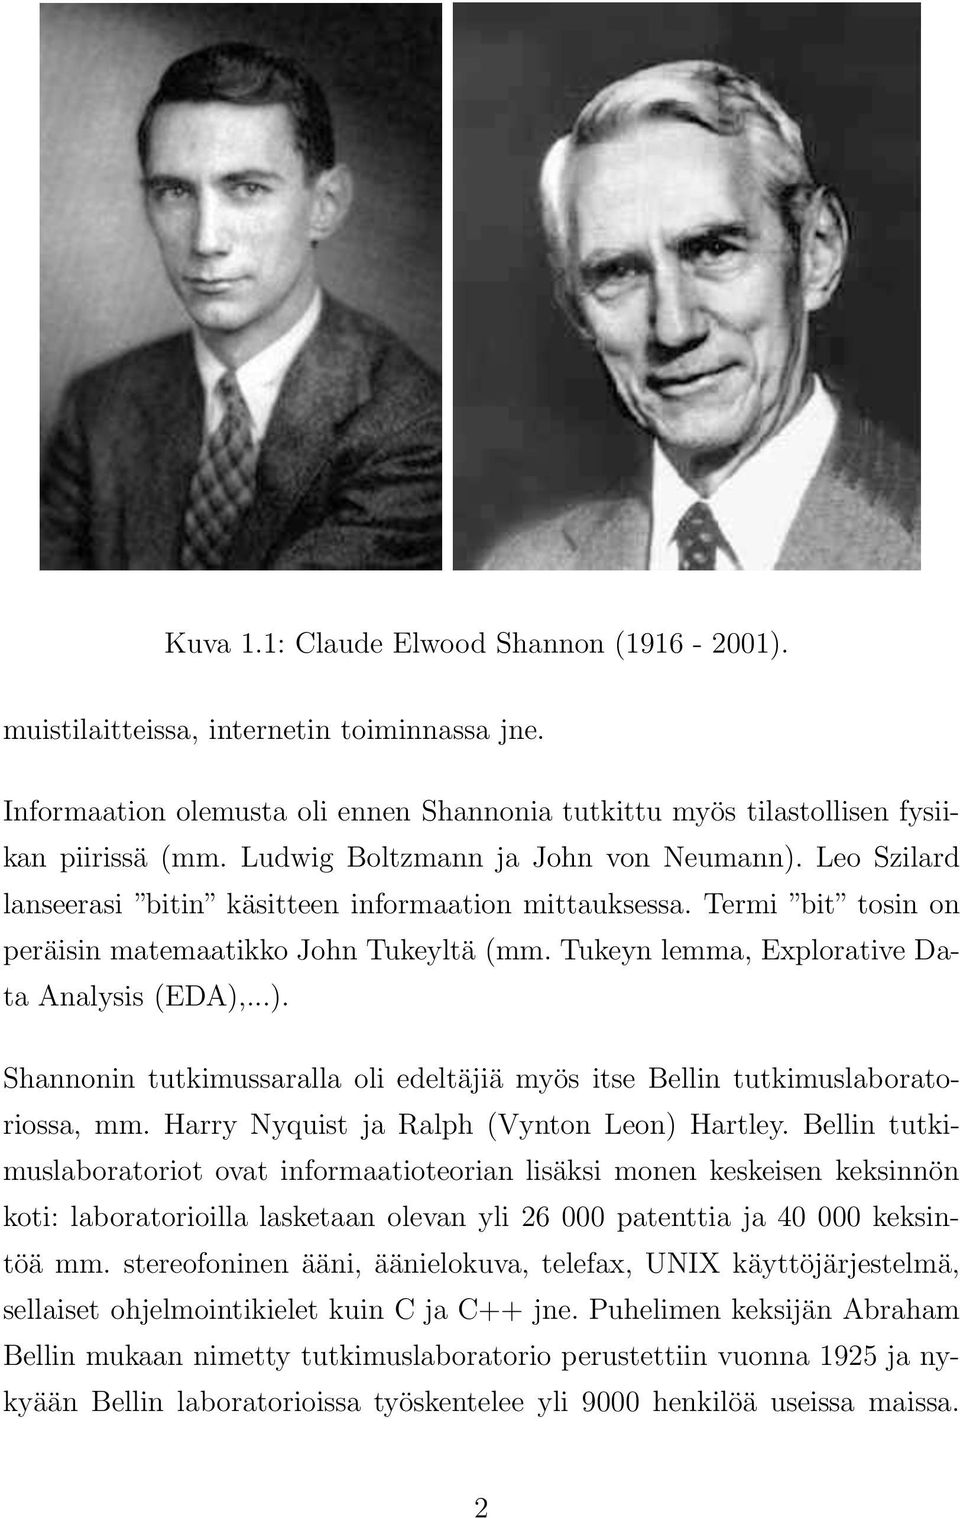 Tukeyn lemma, Explorative Data Analysis (EDA),...). Shannonin tutkimussaralla oli edeltäjiä myös itse Bellin tutkimuslaboratoriossa, mm. Harry Nyquist ja Ralph (Vynton Leon) Hartley.